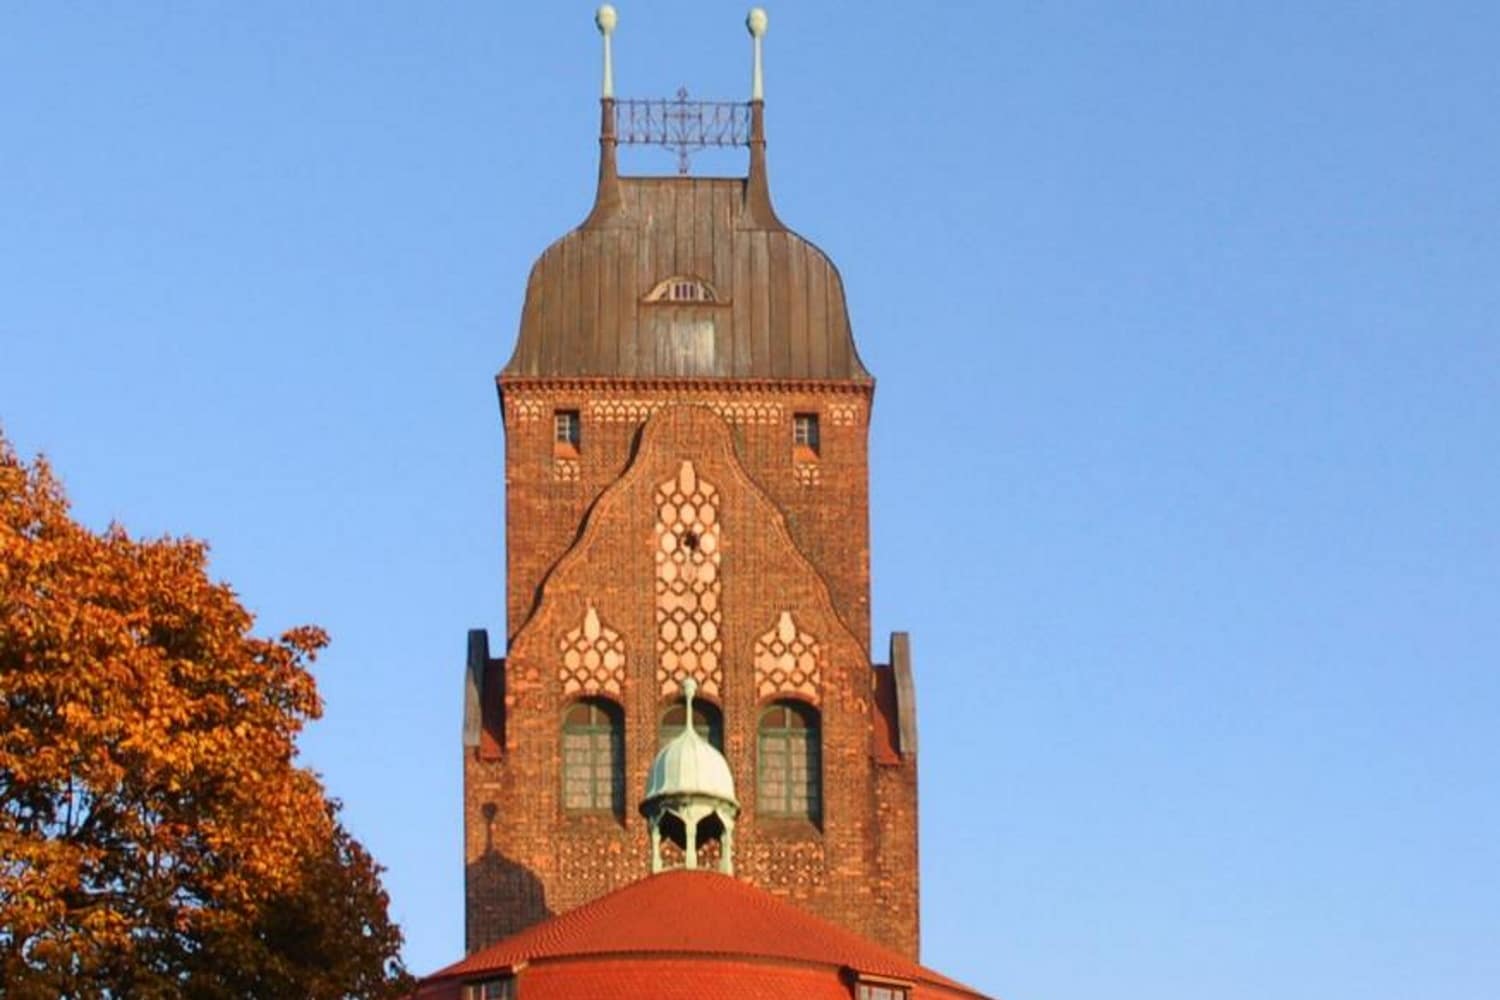 Martinskirche Köthen, von Ralf Roletschek, GFDL 1.2, https://commons.wikimedia.org/w/index.php?curid=8250088